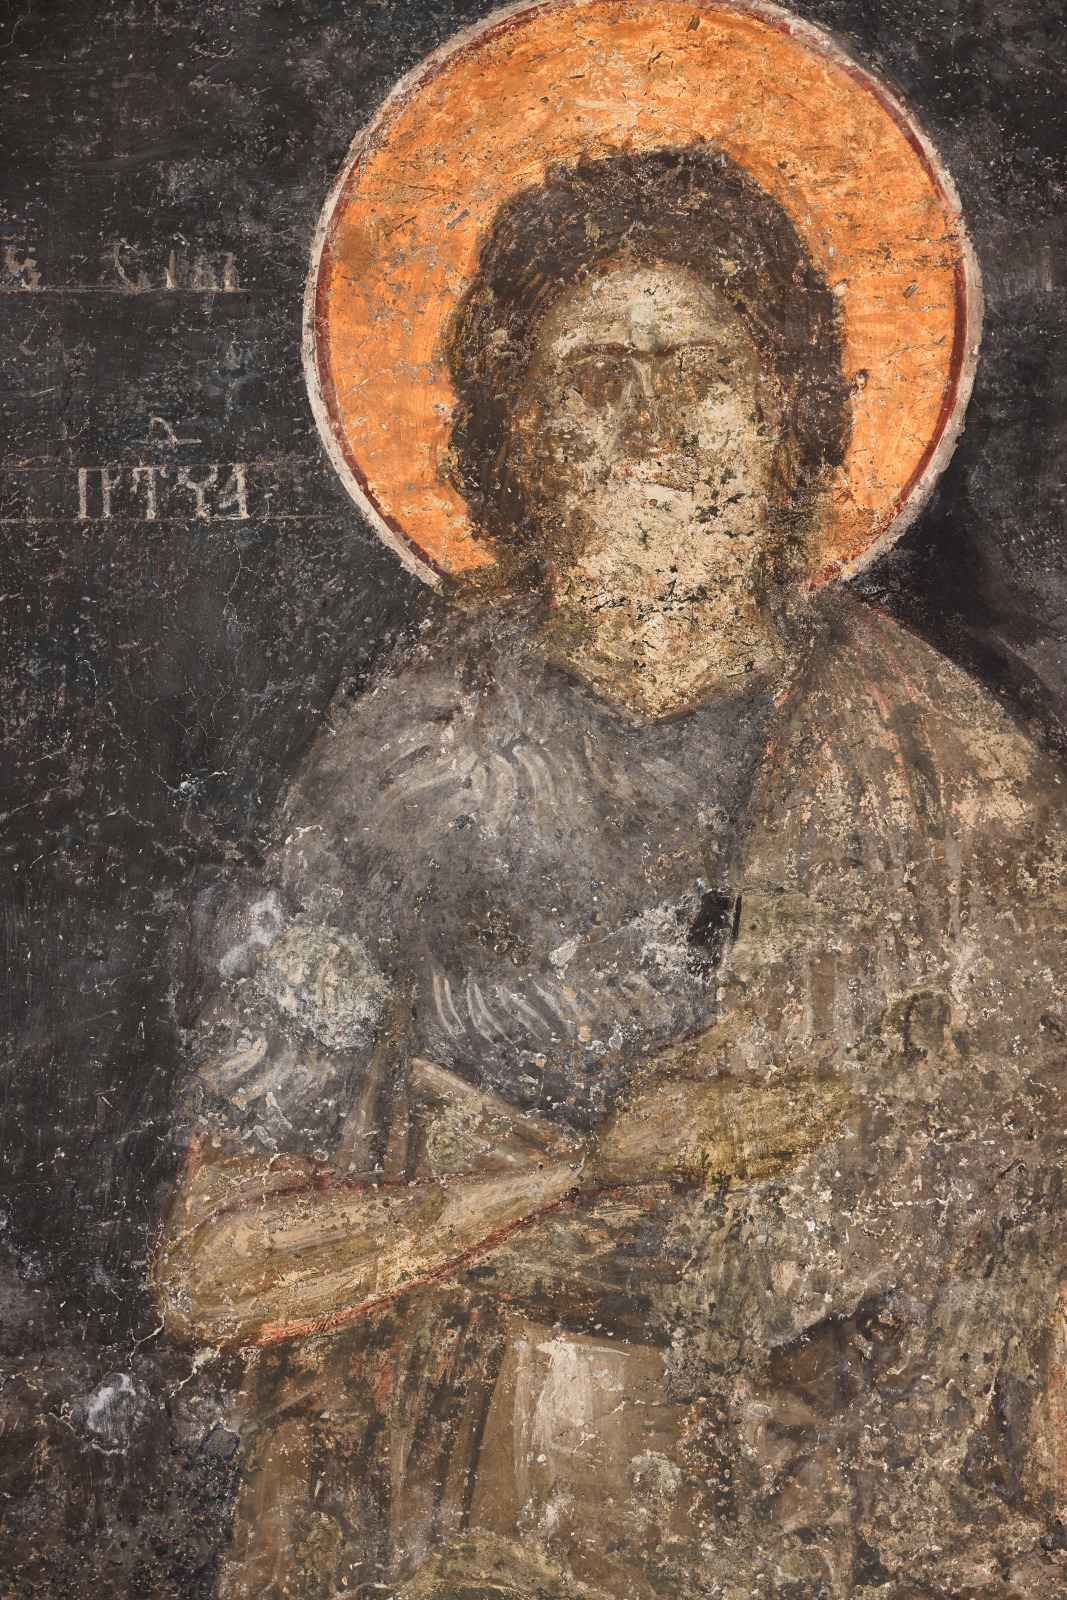 St. John the Forerunner, detail